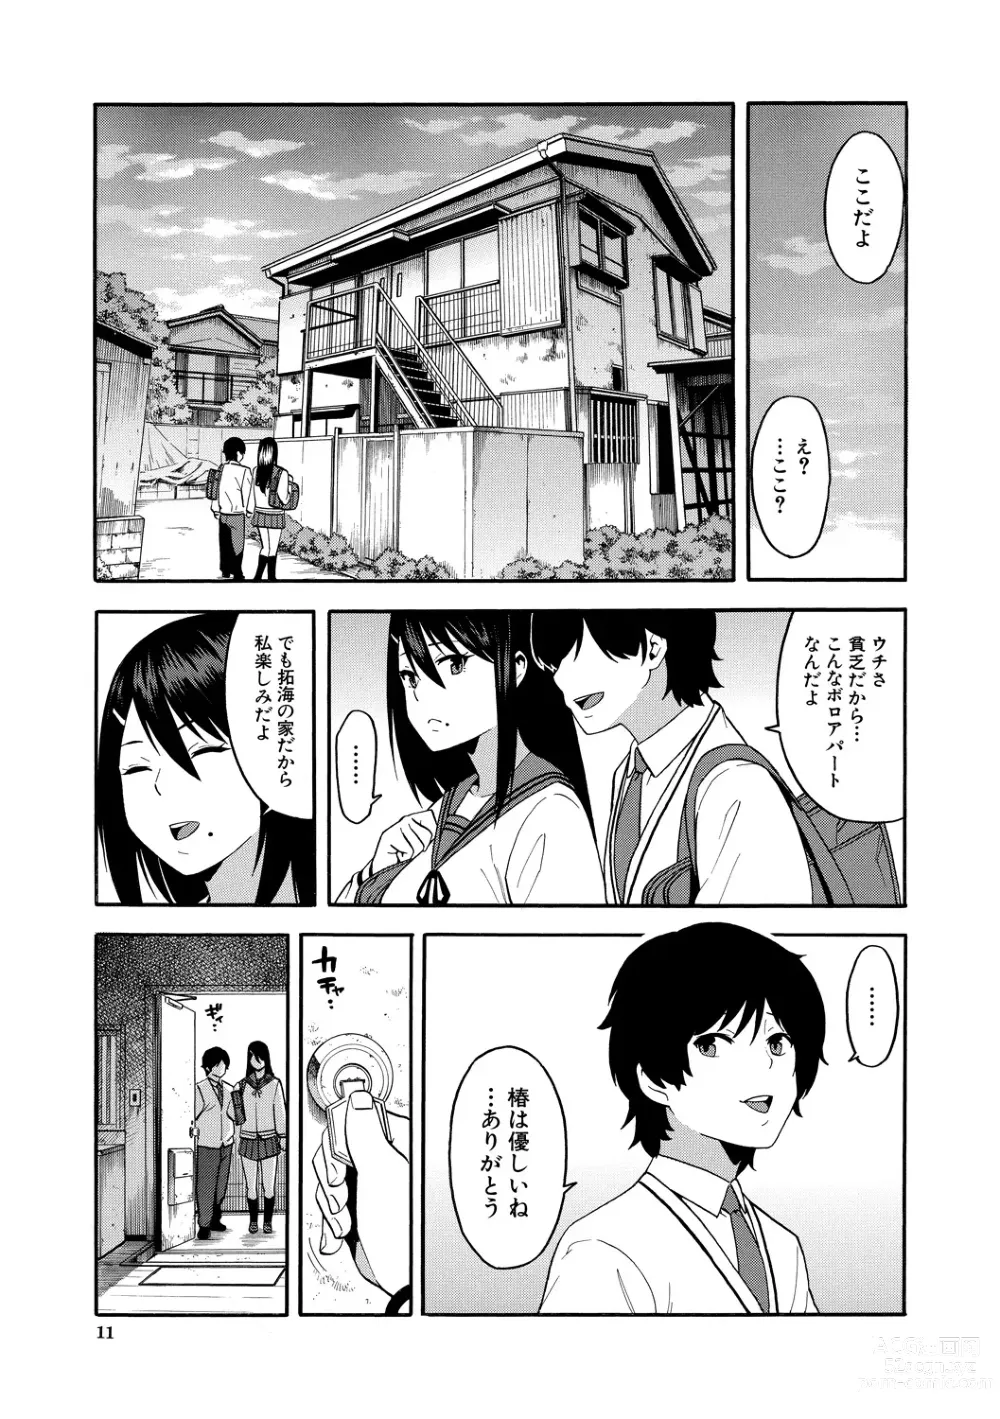 Page 11 of manga Boku no Kanojo o Netotte Kudasai